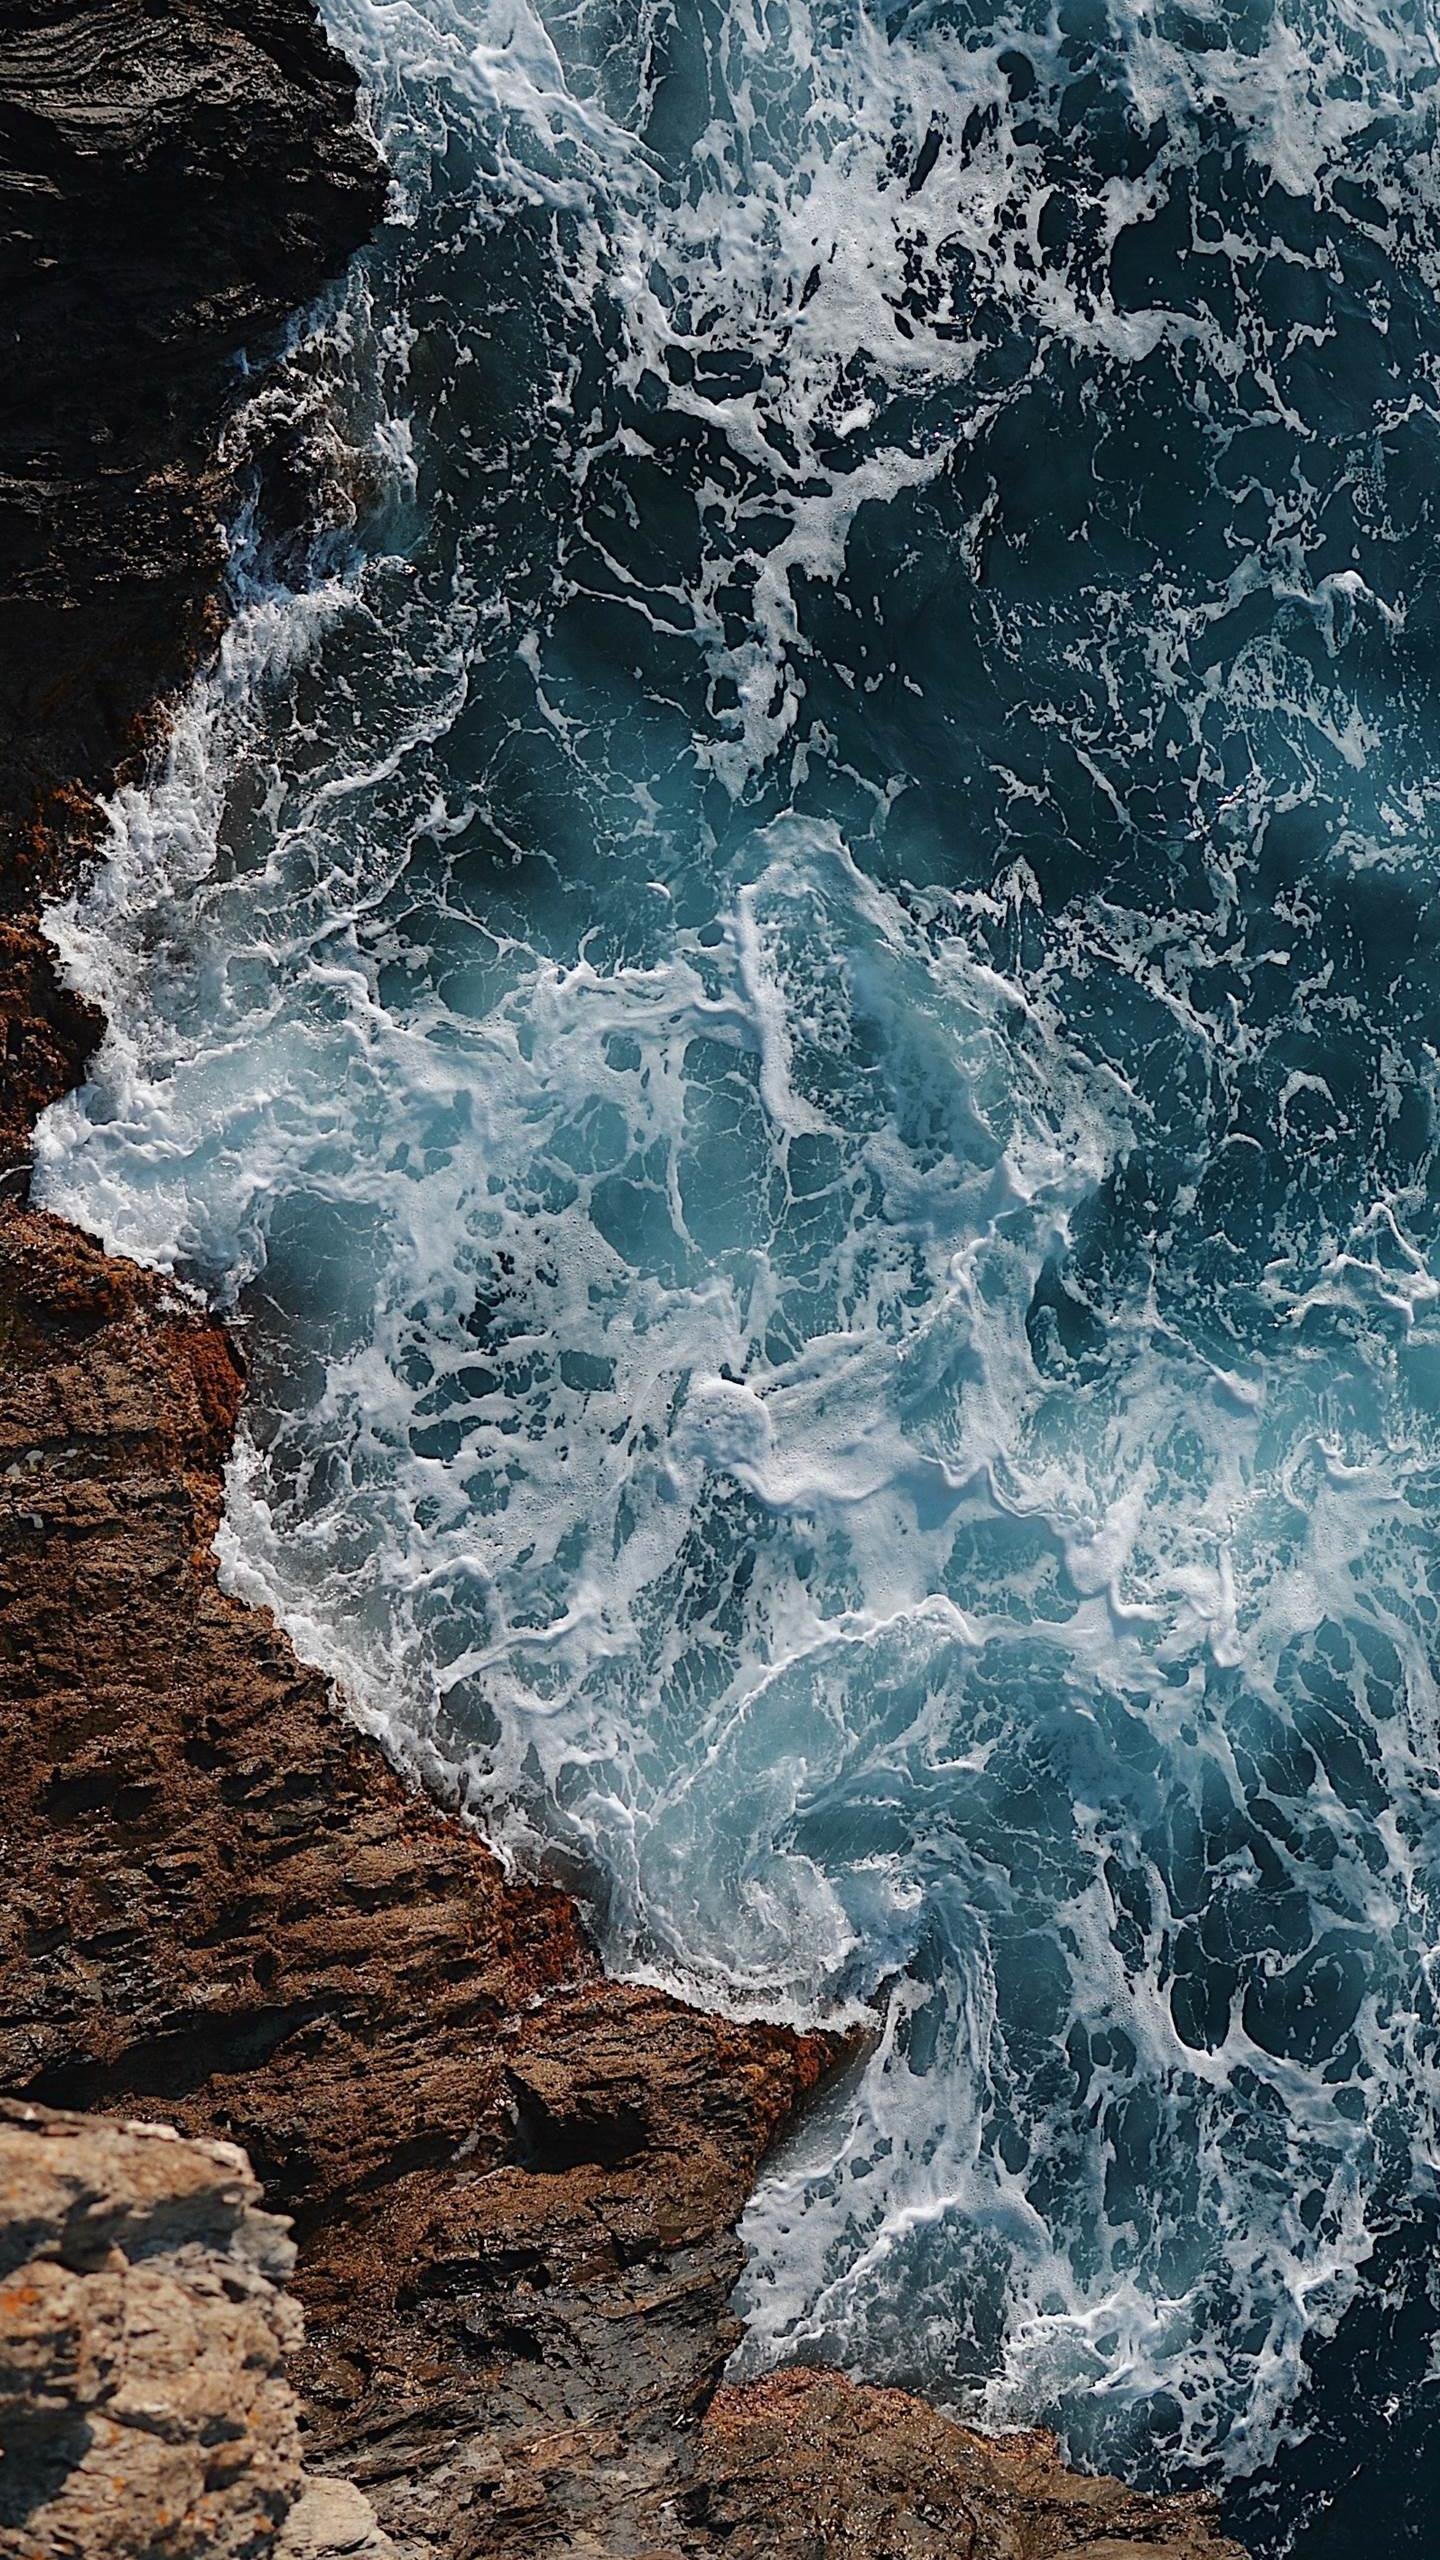 Aesthetic Ocean Wallpaper iPhone, Download Wallpaper on Jakpost